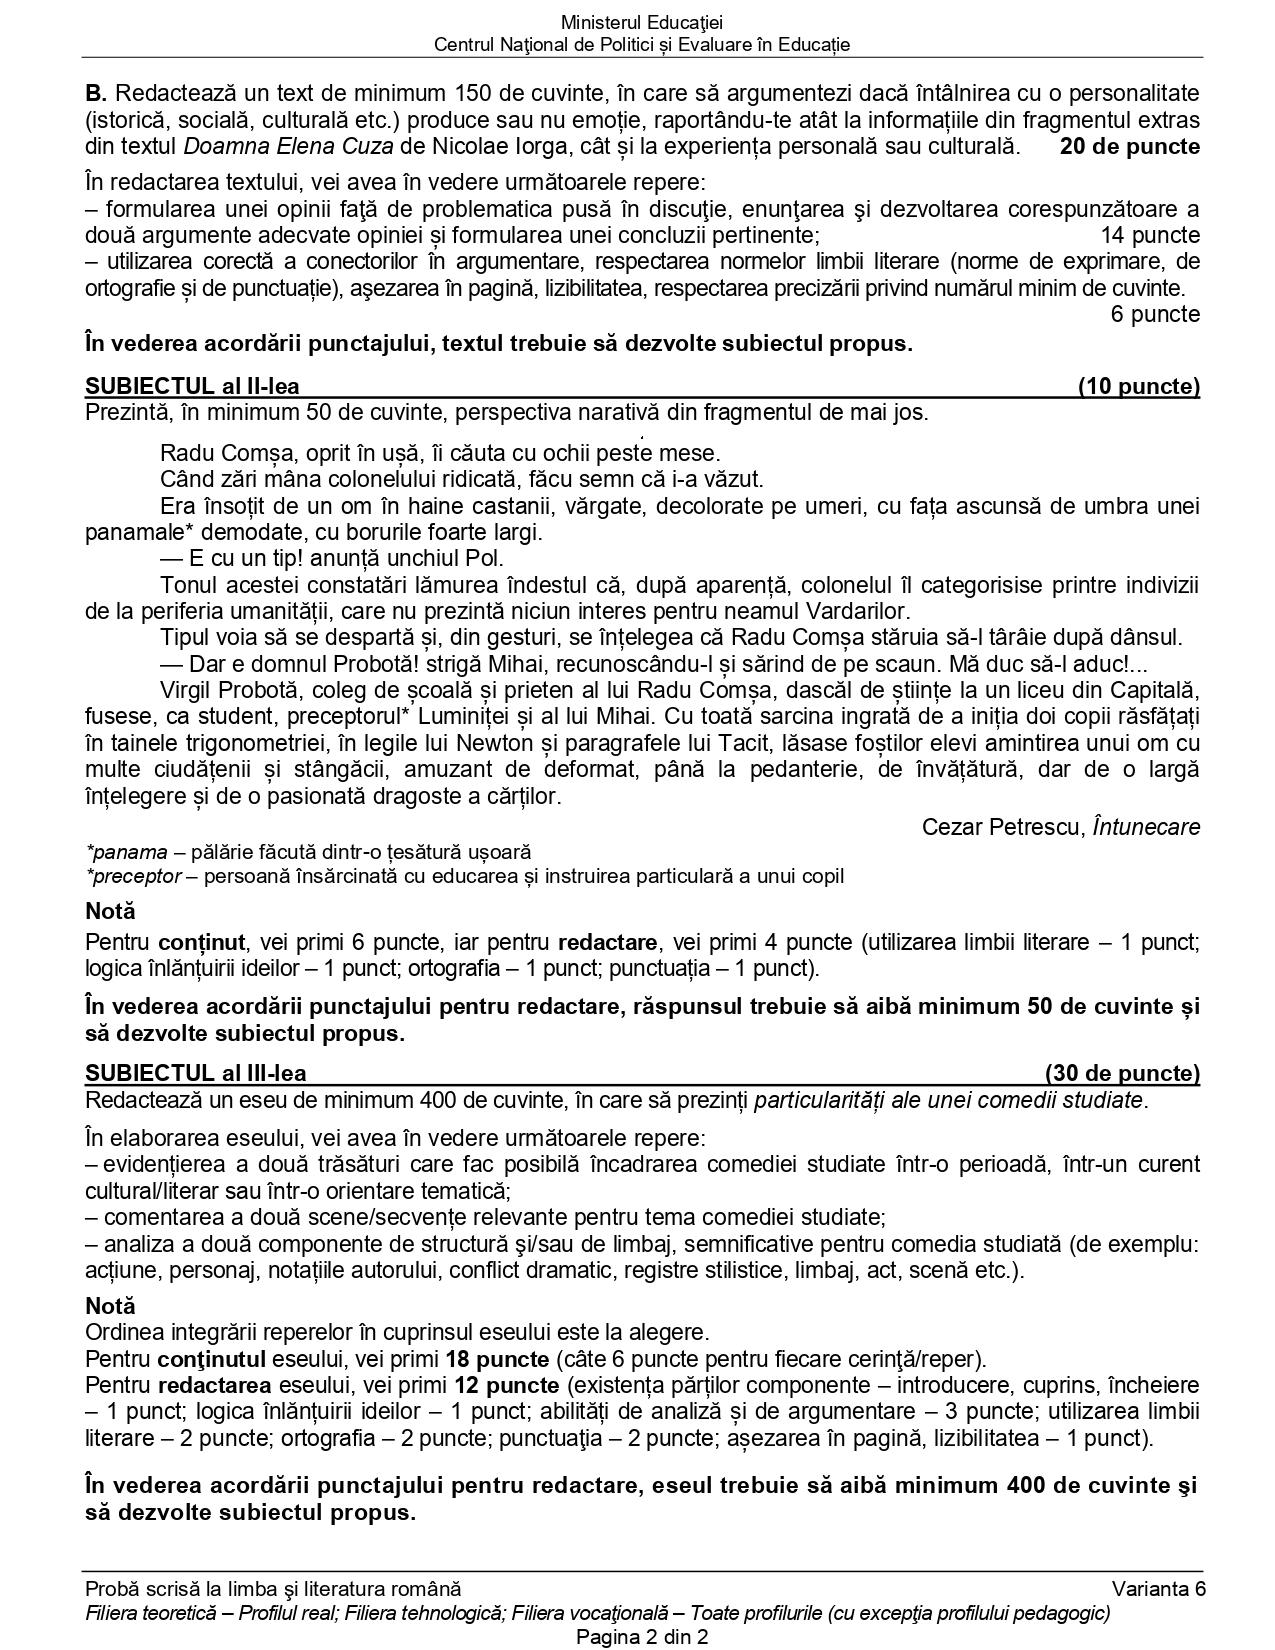 Subiectele la română - profilul real, la BAC 2022